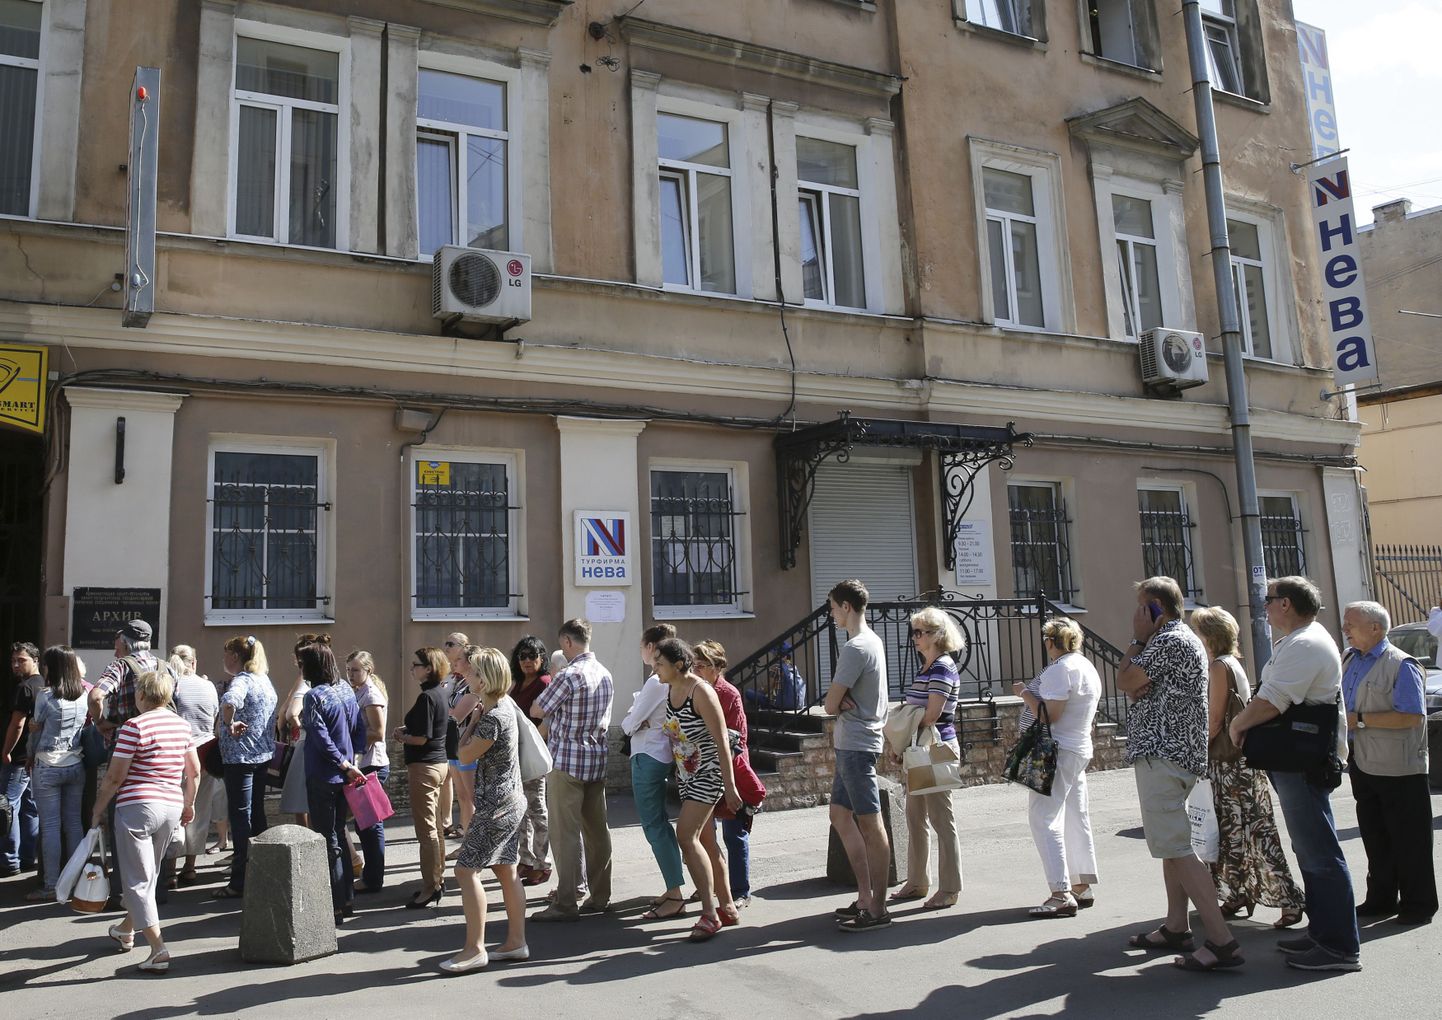 Tegevuse lõpetanud Vene reisikorraldaja Neva kliendid seisavad Peterburis firma kontori ukse taga järjekorras, et saada tagasi reisi eest makstud raha.